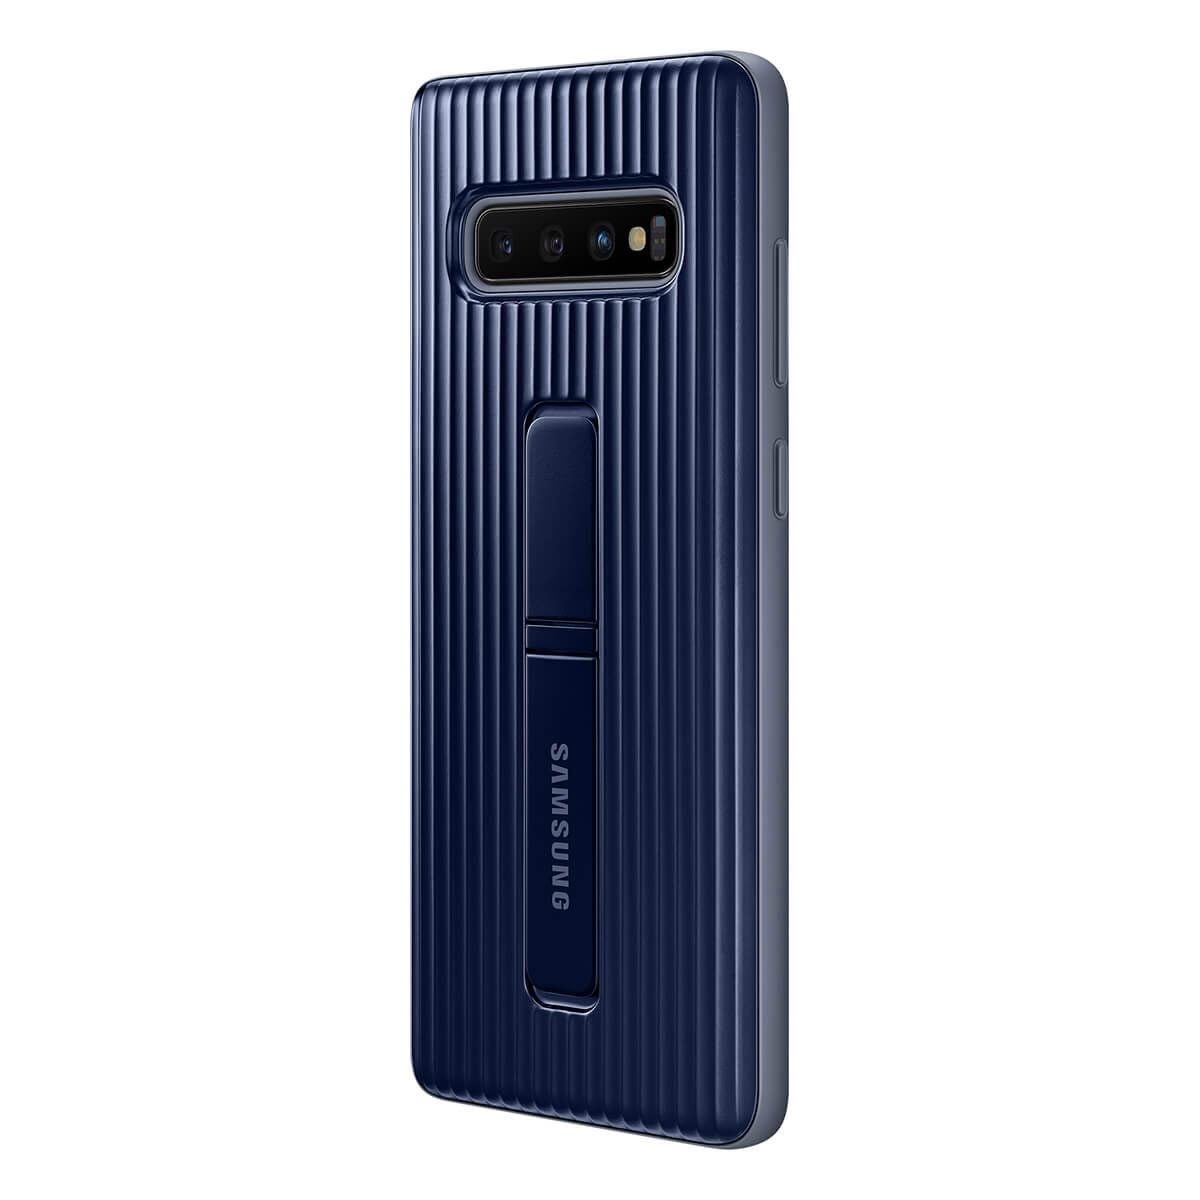 Funda para Galaxy S10+ Color Negro Protective Samsung